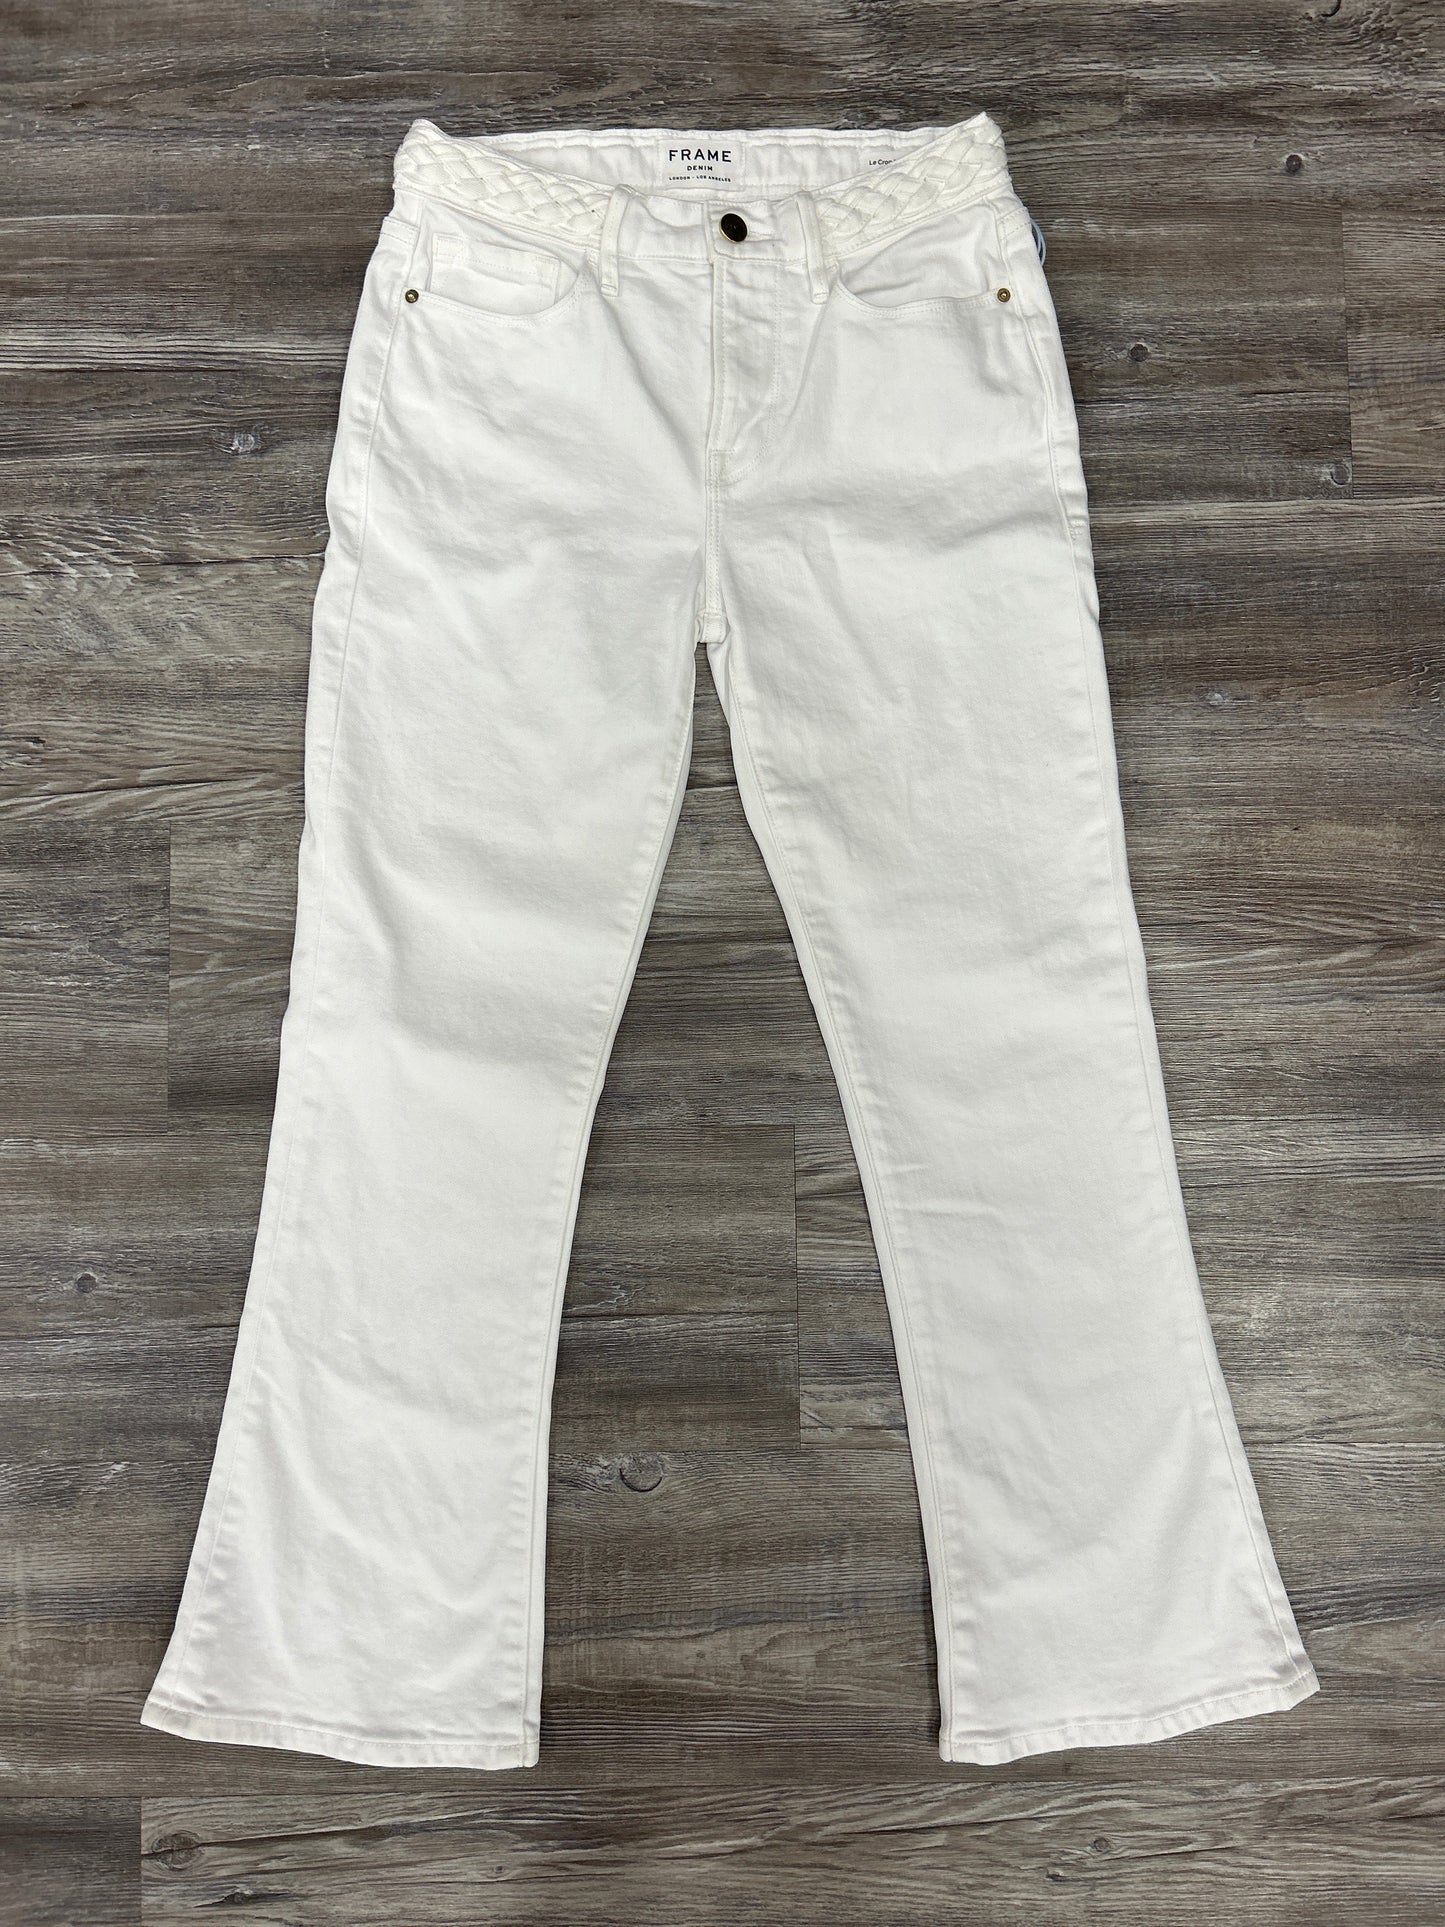 White Jeans Designer Frame, Size 0